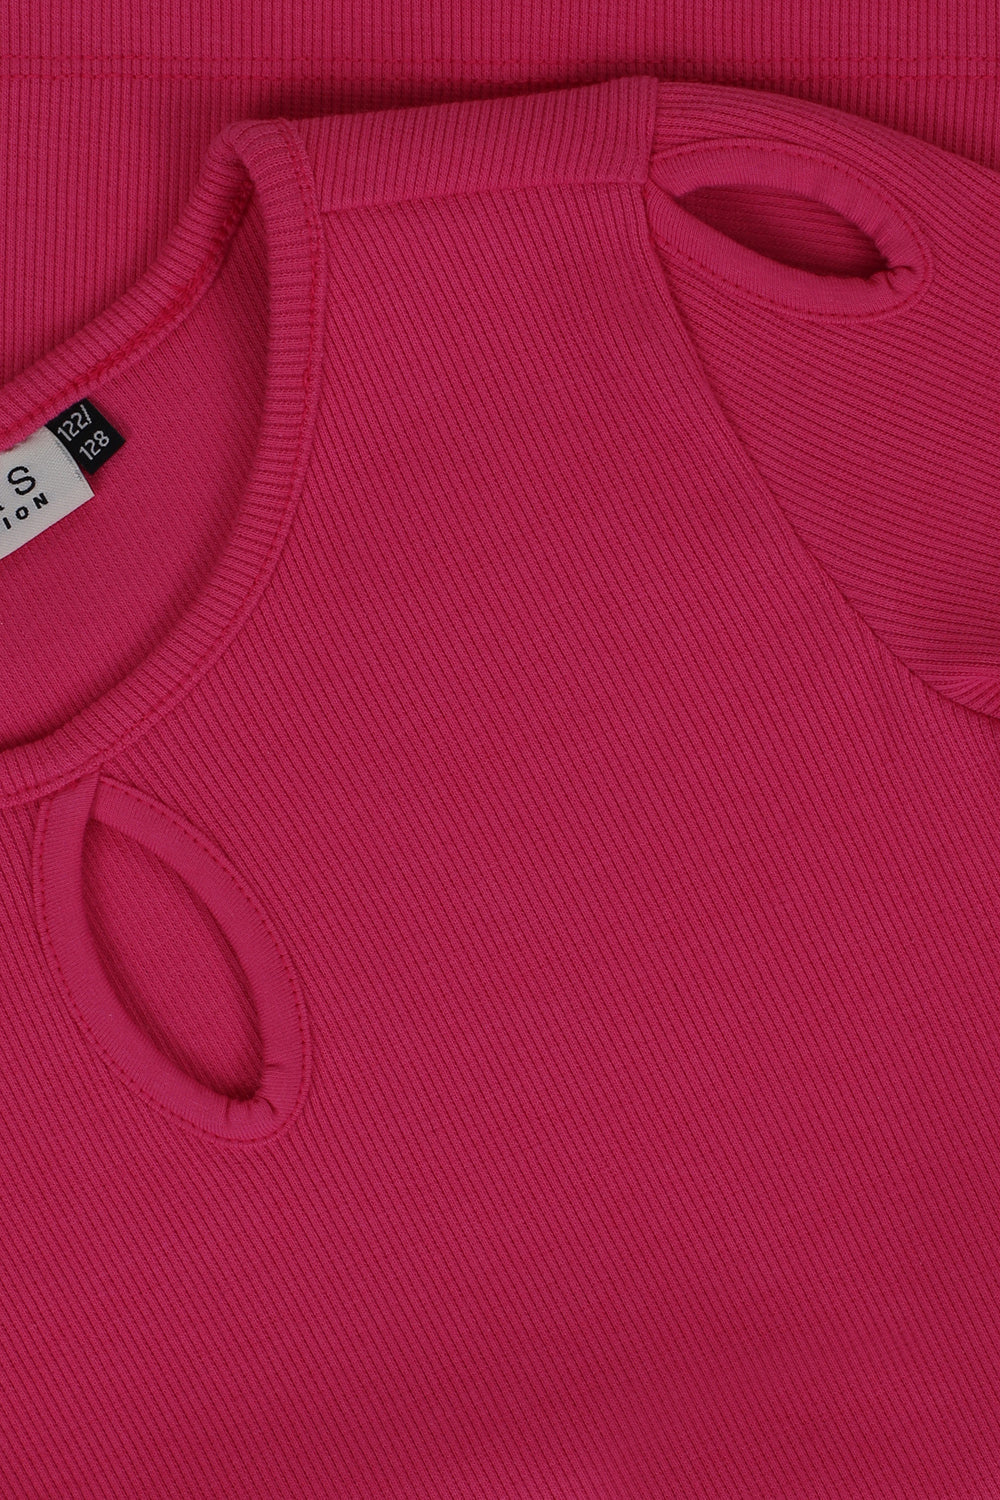 Meisjes Rib T-Shirt van LOOXS 10sixteen in de kleur fluo fuchsia in maat 176.